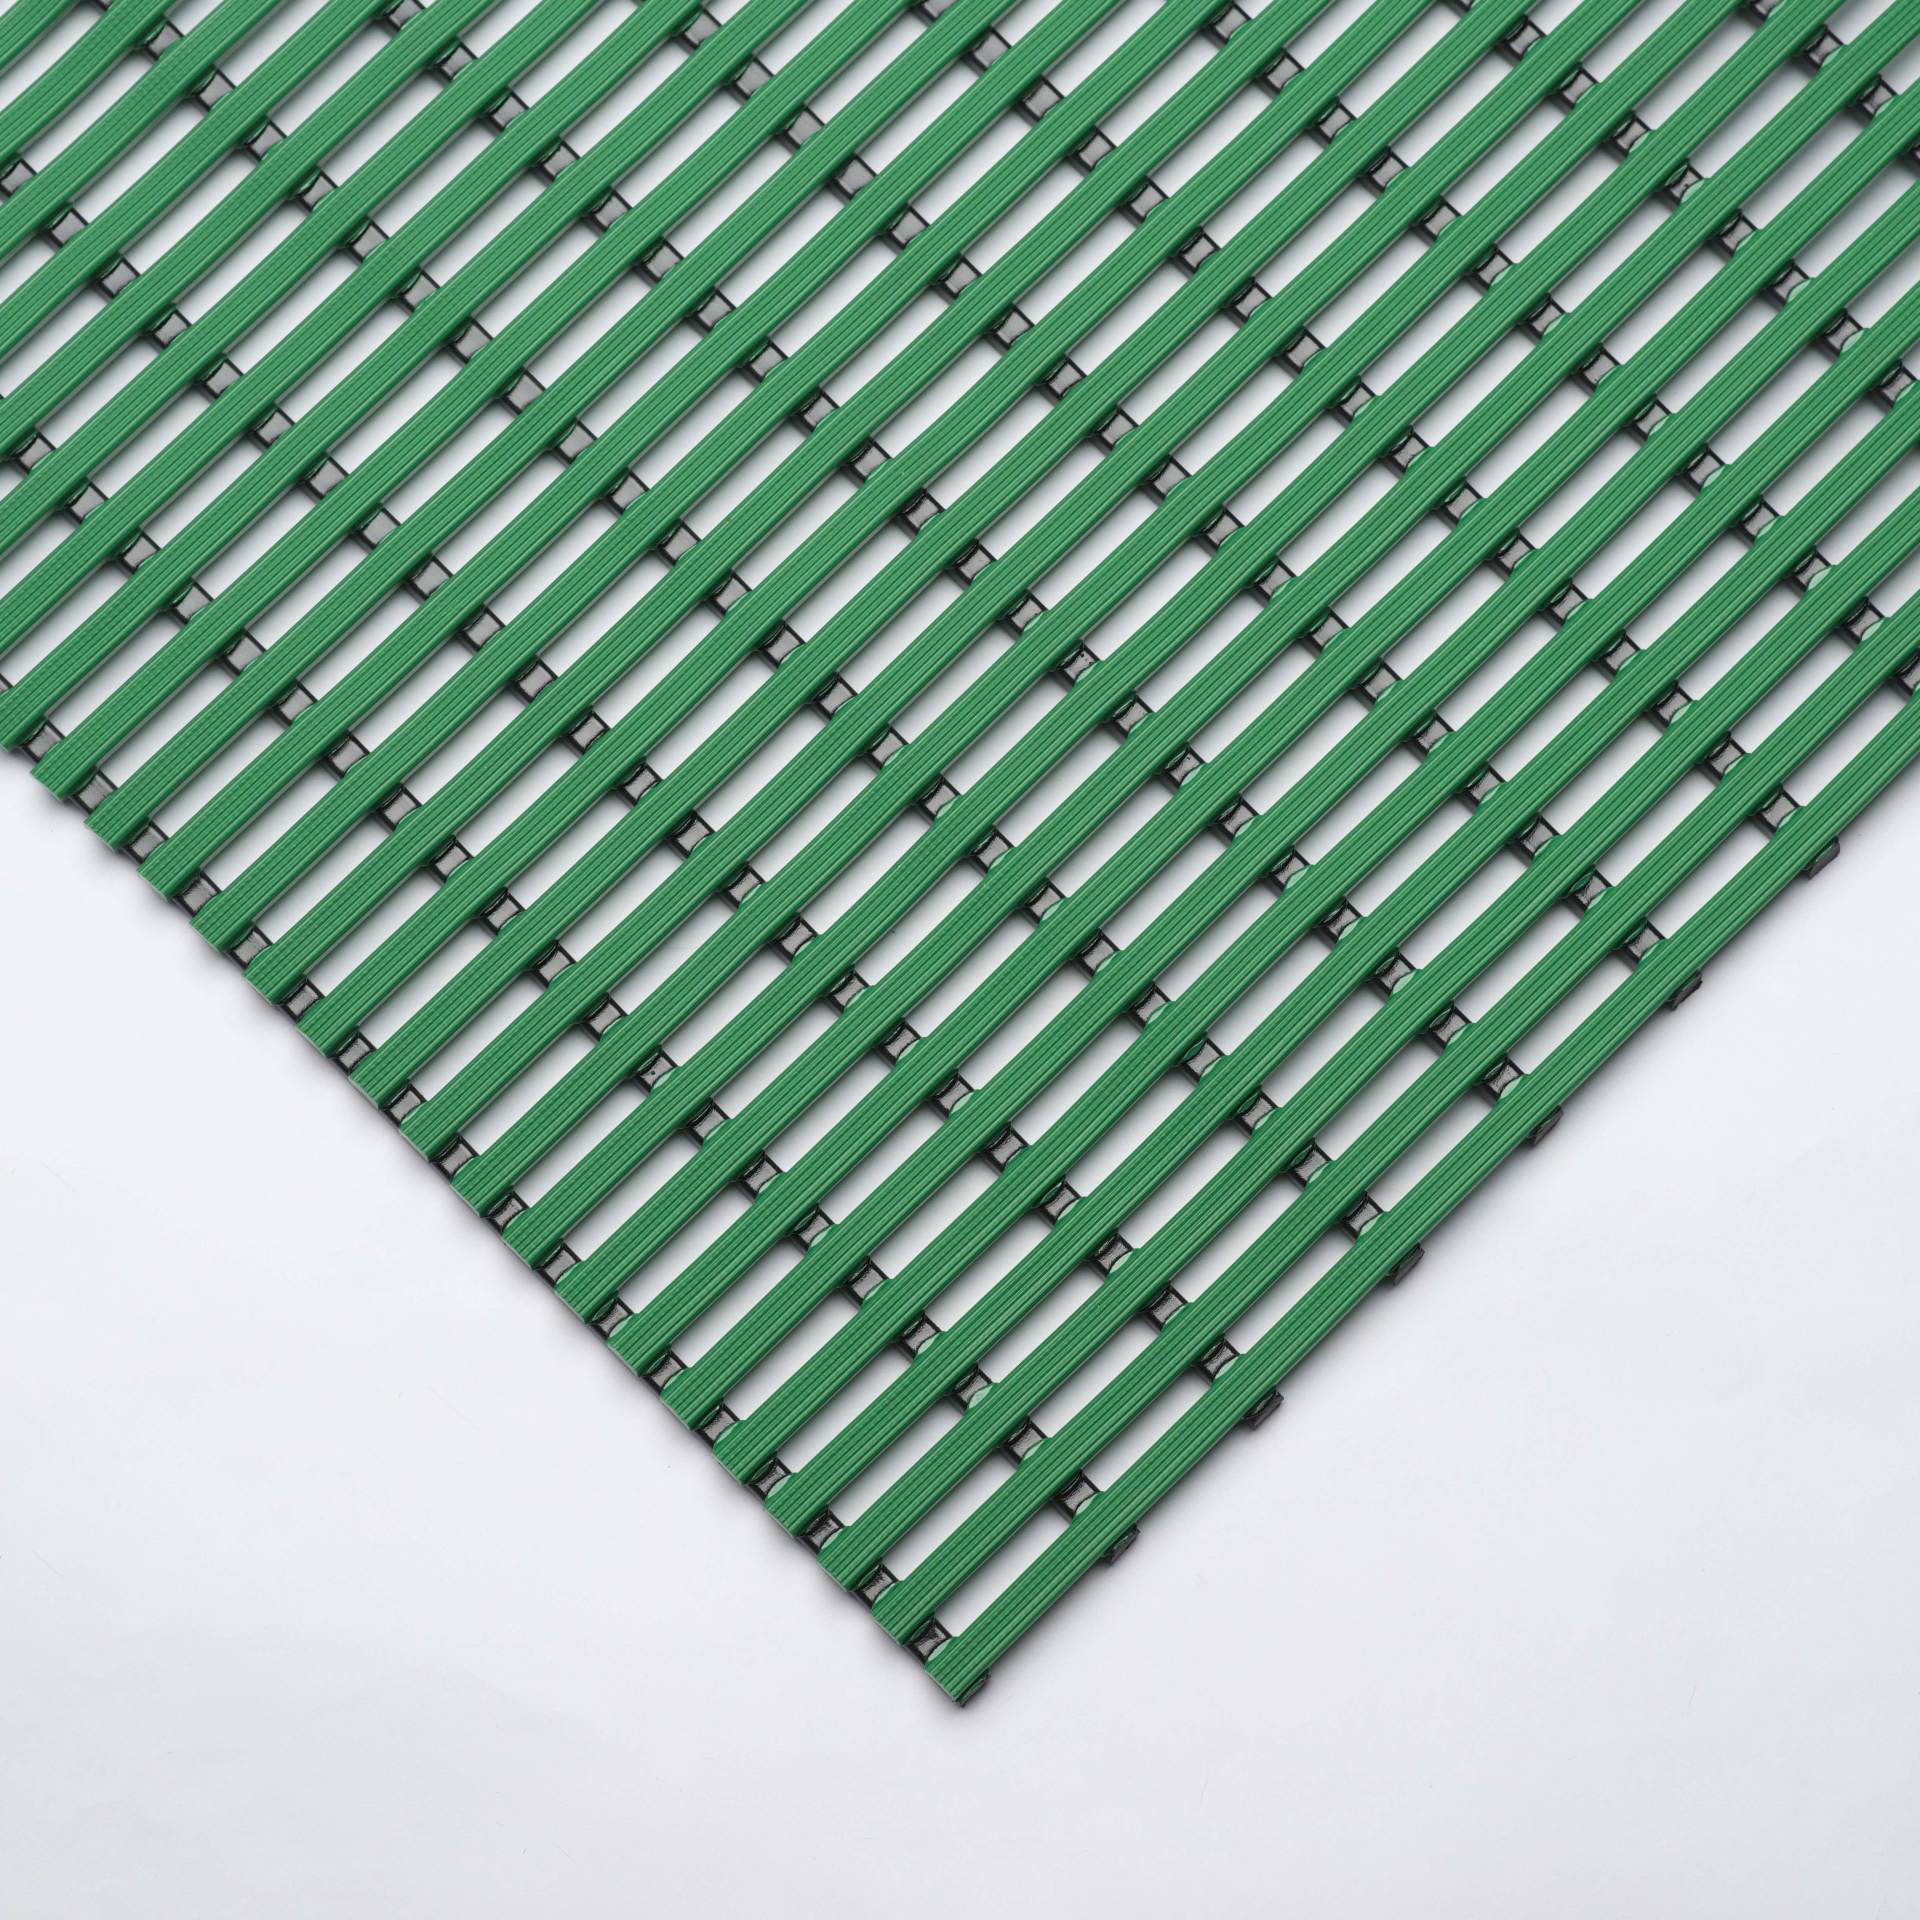 EHA Bädermatte für Nassraum, 60 cm, Grün von EHA